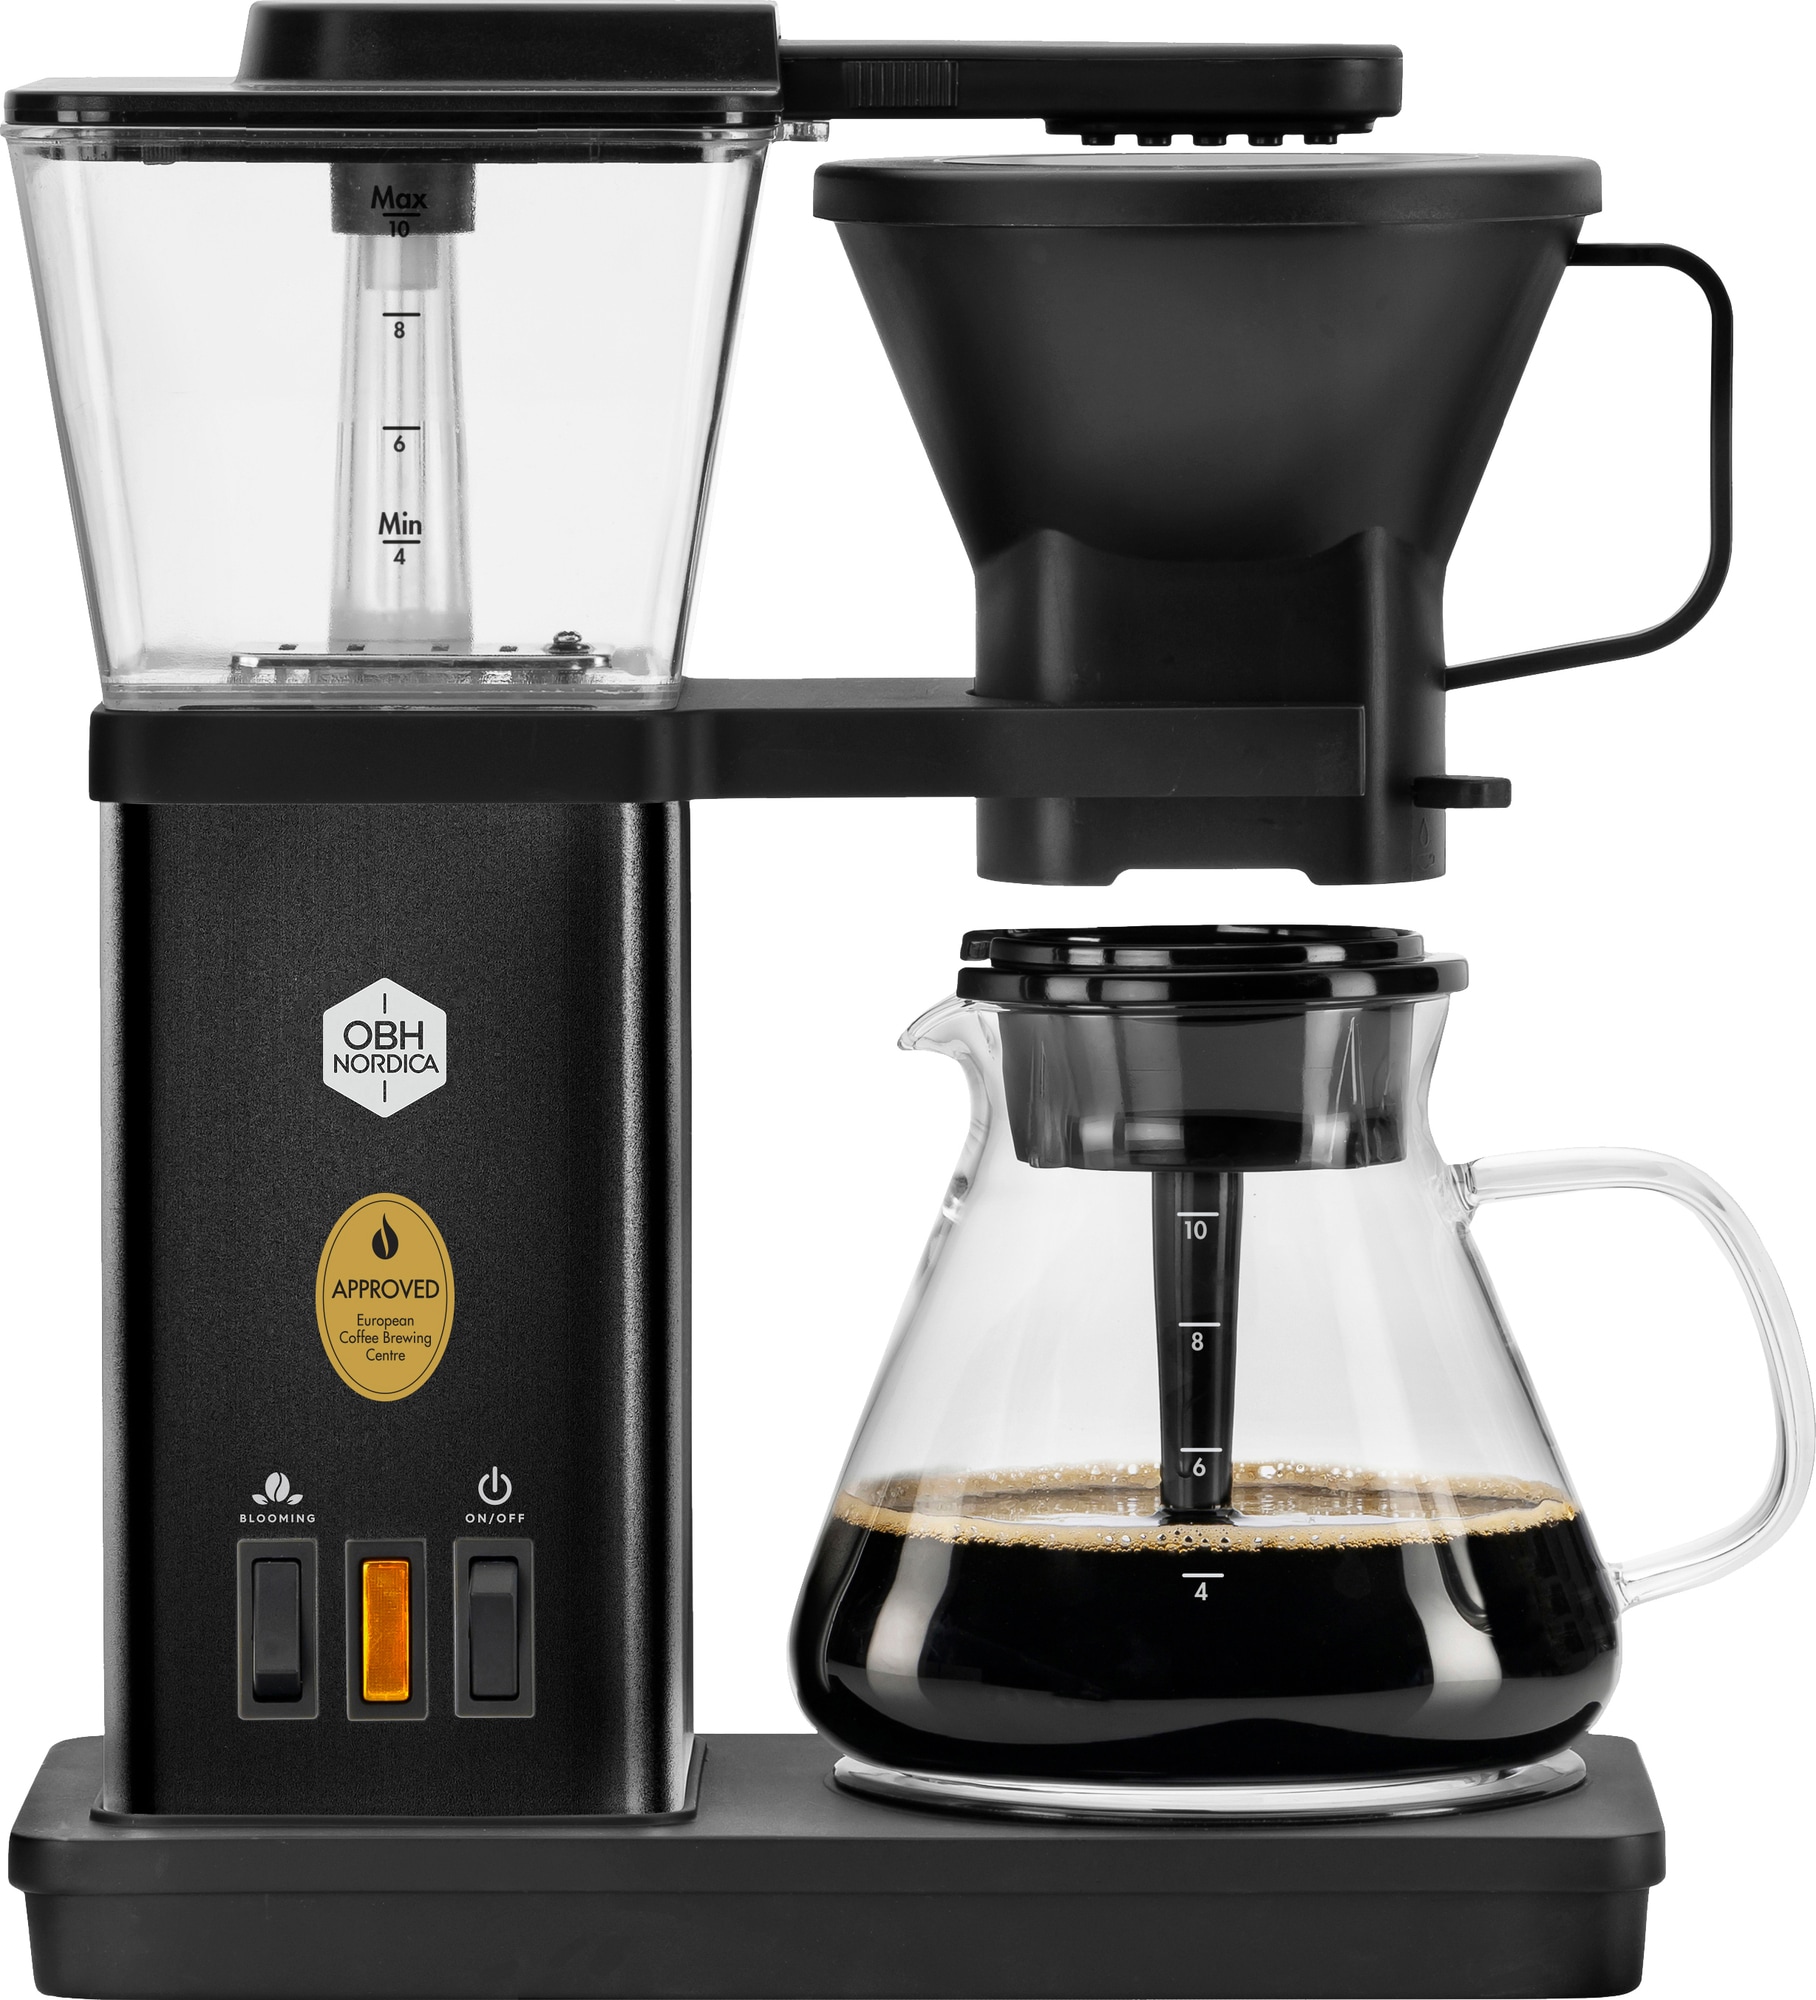 #1 - OBH Nordica Blooming kaffemaskine 3000000992 (sort)